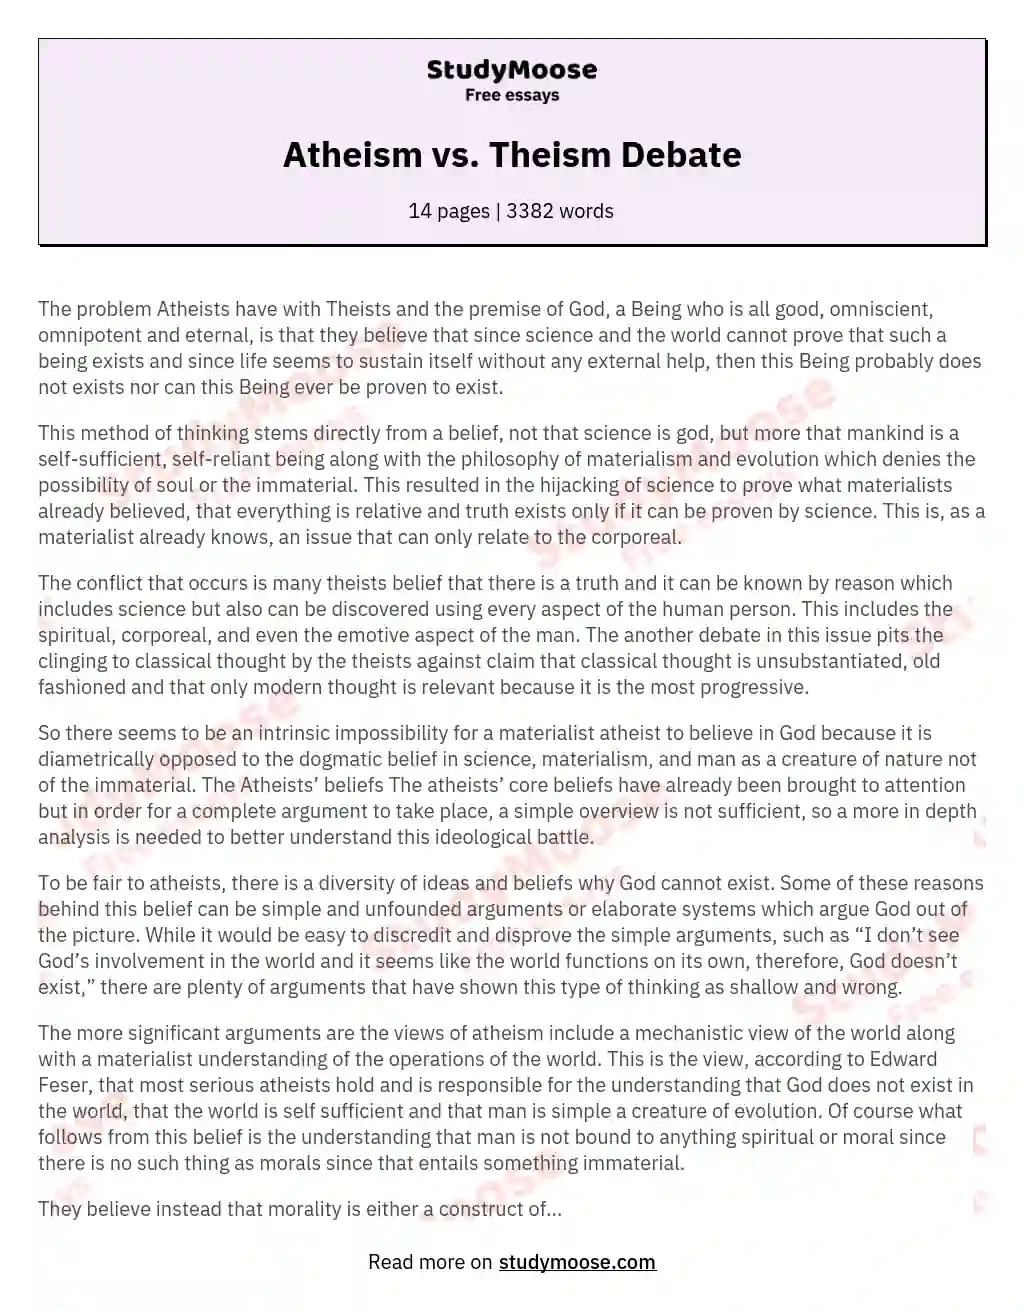 Atheism vs. Theism Debate essay